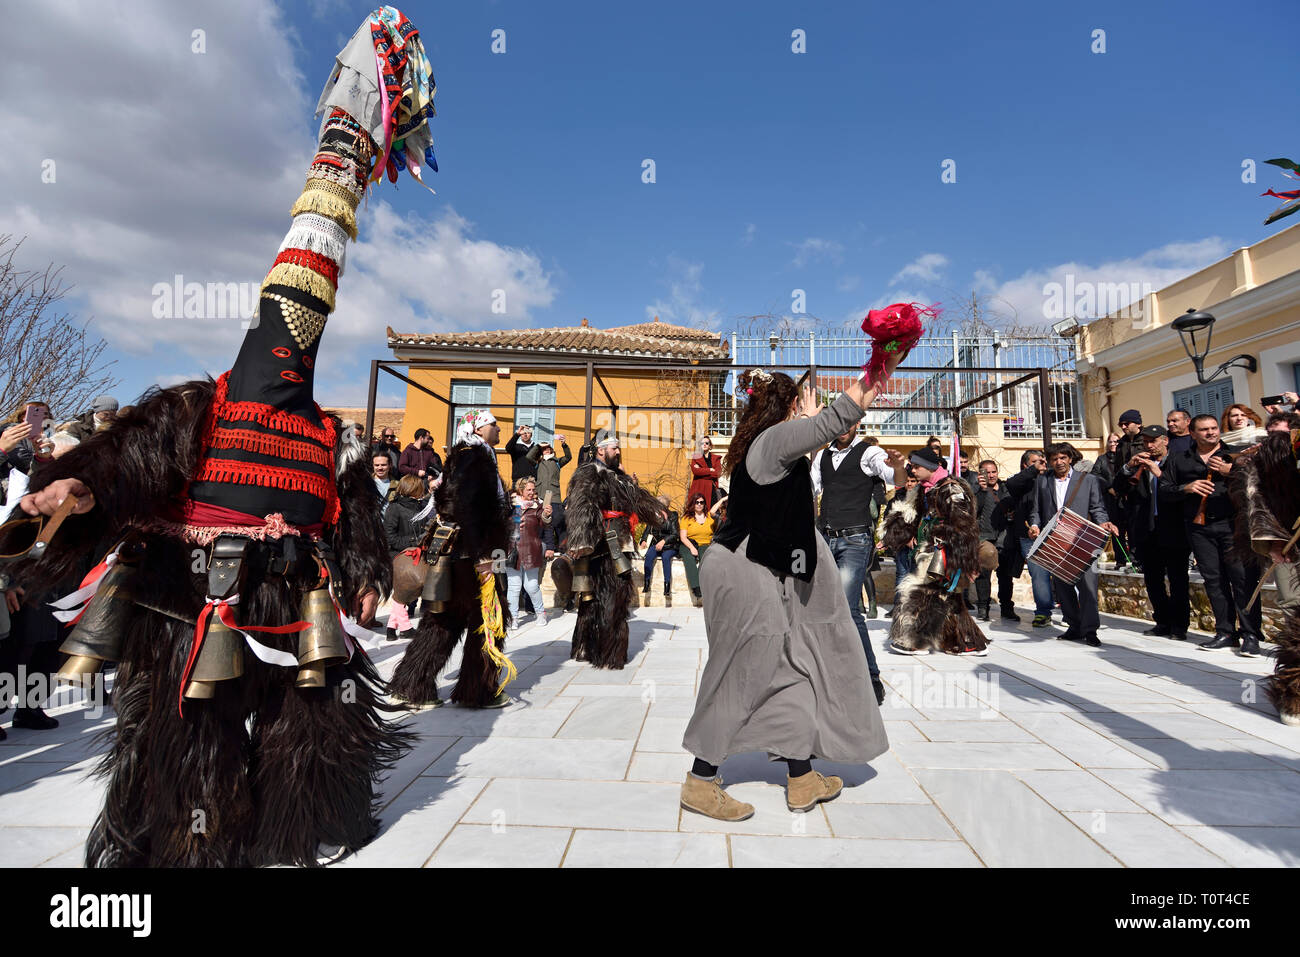 Les hommes de la Grèce du Nord portant des costumes traditionnels avec des cloches, danse pendant le carnaval festival à Athènes, Grèce Banque D'Images